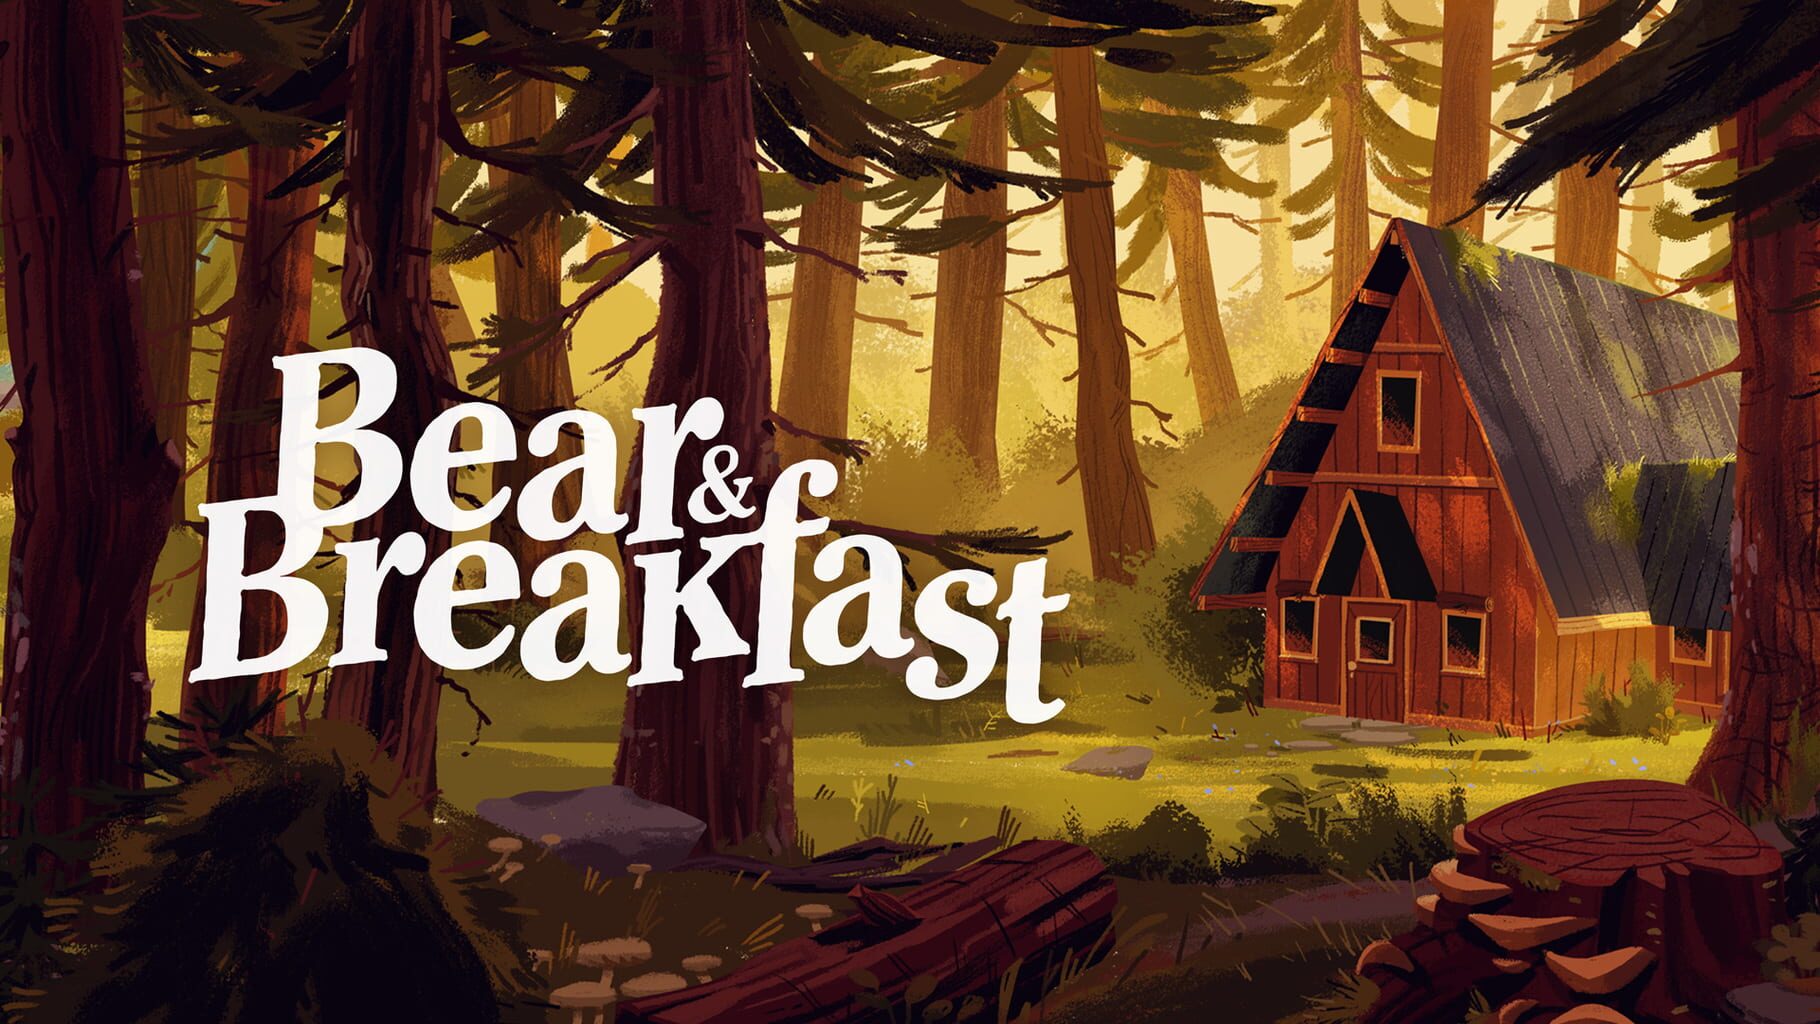 Bear & Breakfast artwork